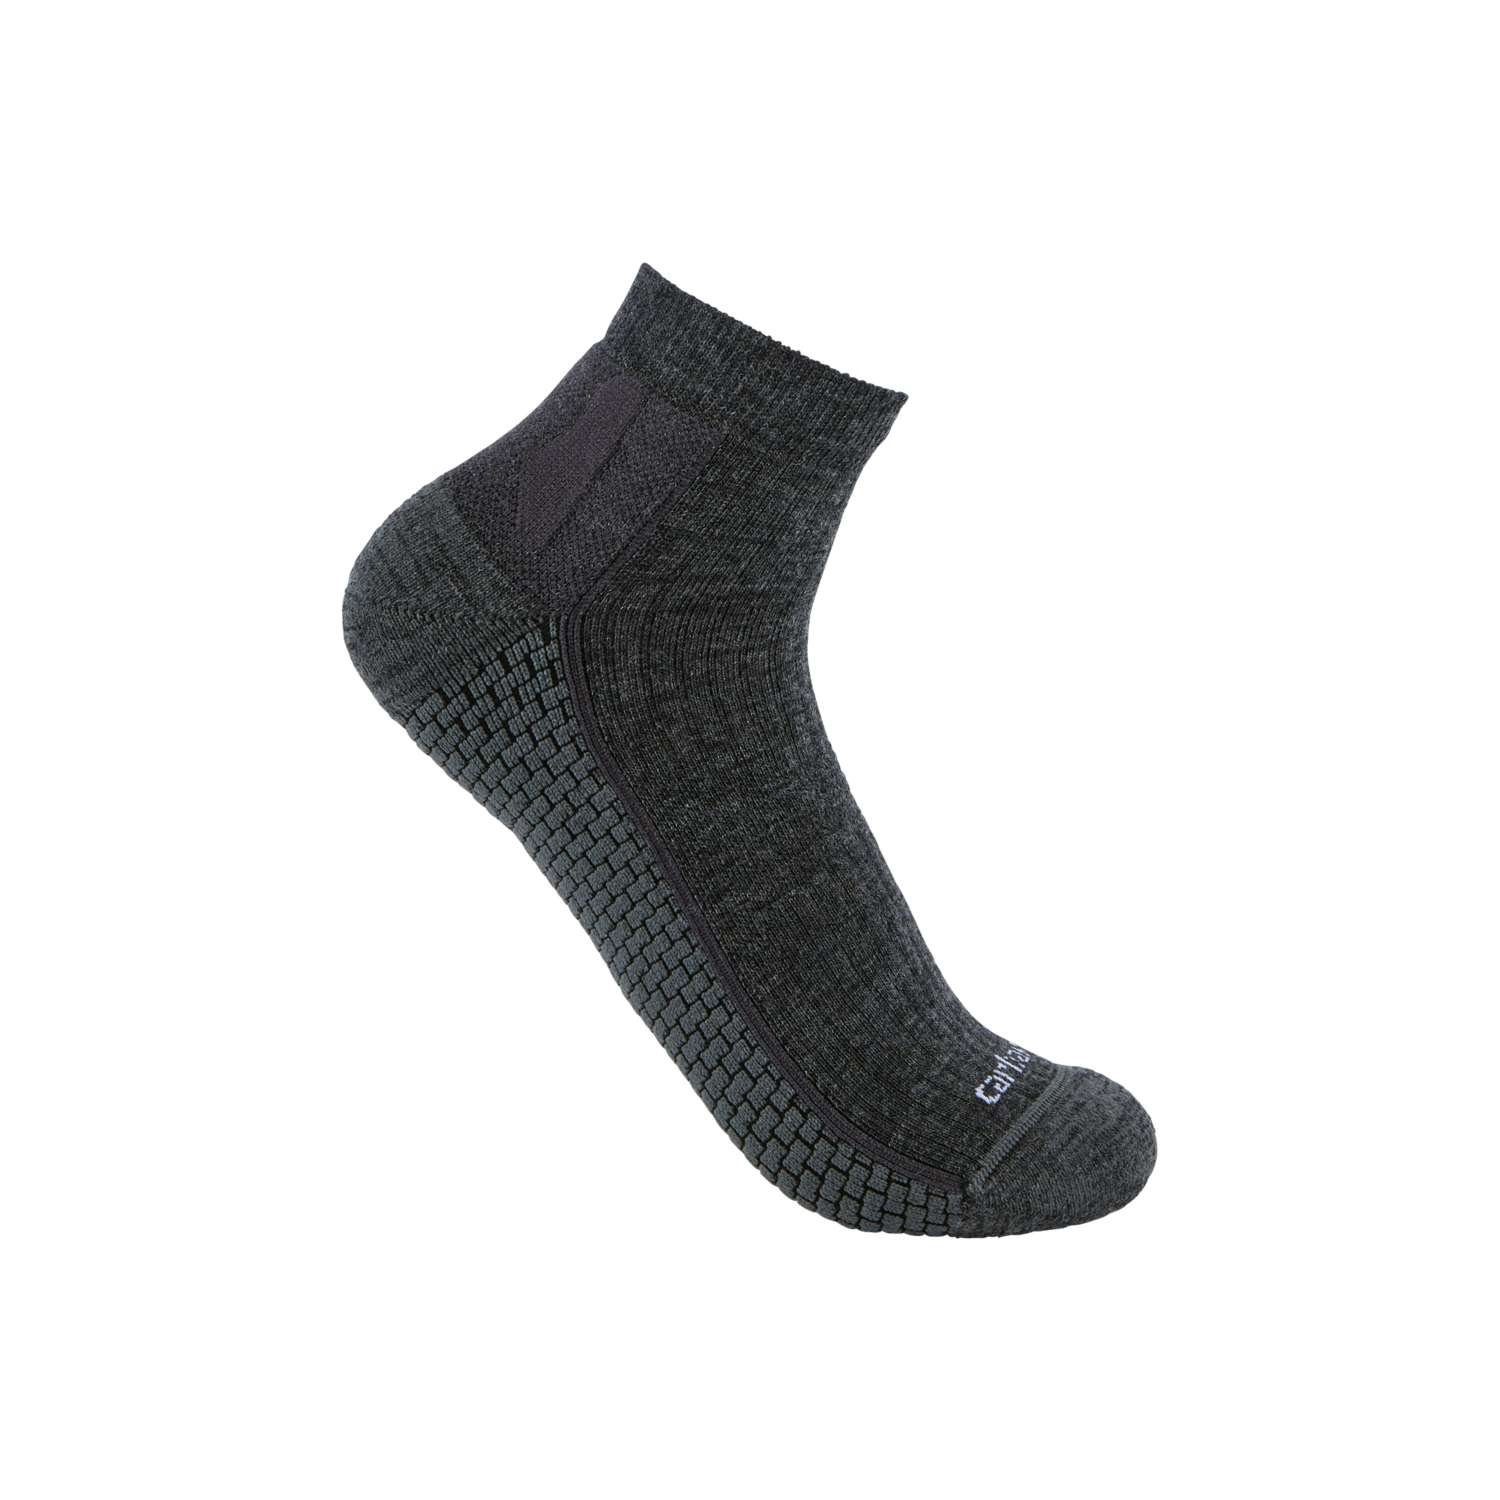 Carhartt Carhartt carbon heather Unisex Synthetic-Merino Wool Quarter Socken Socken